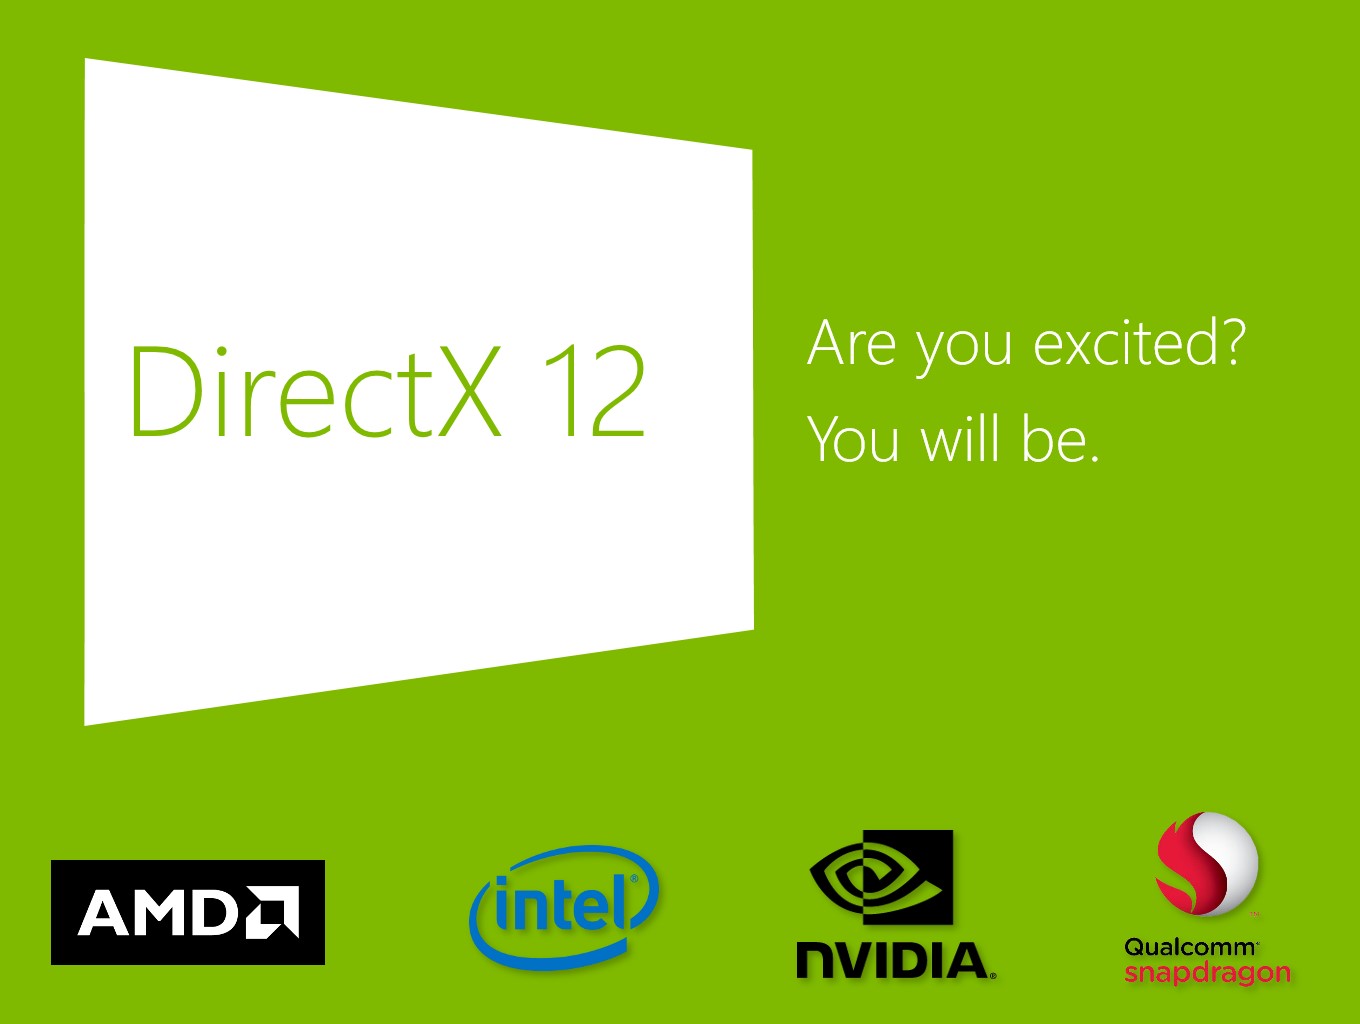 Логотип пакета DirectX 12, по умолчанию встроенного в Windows 10